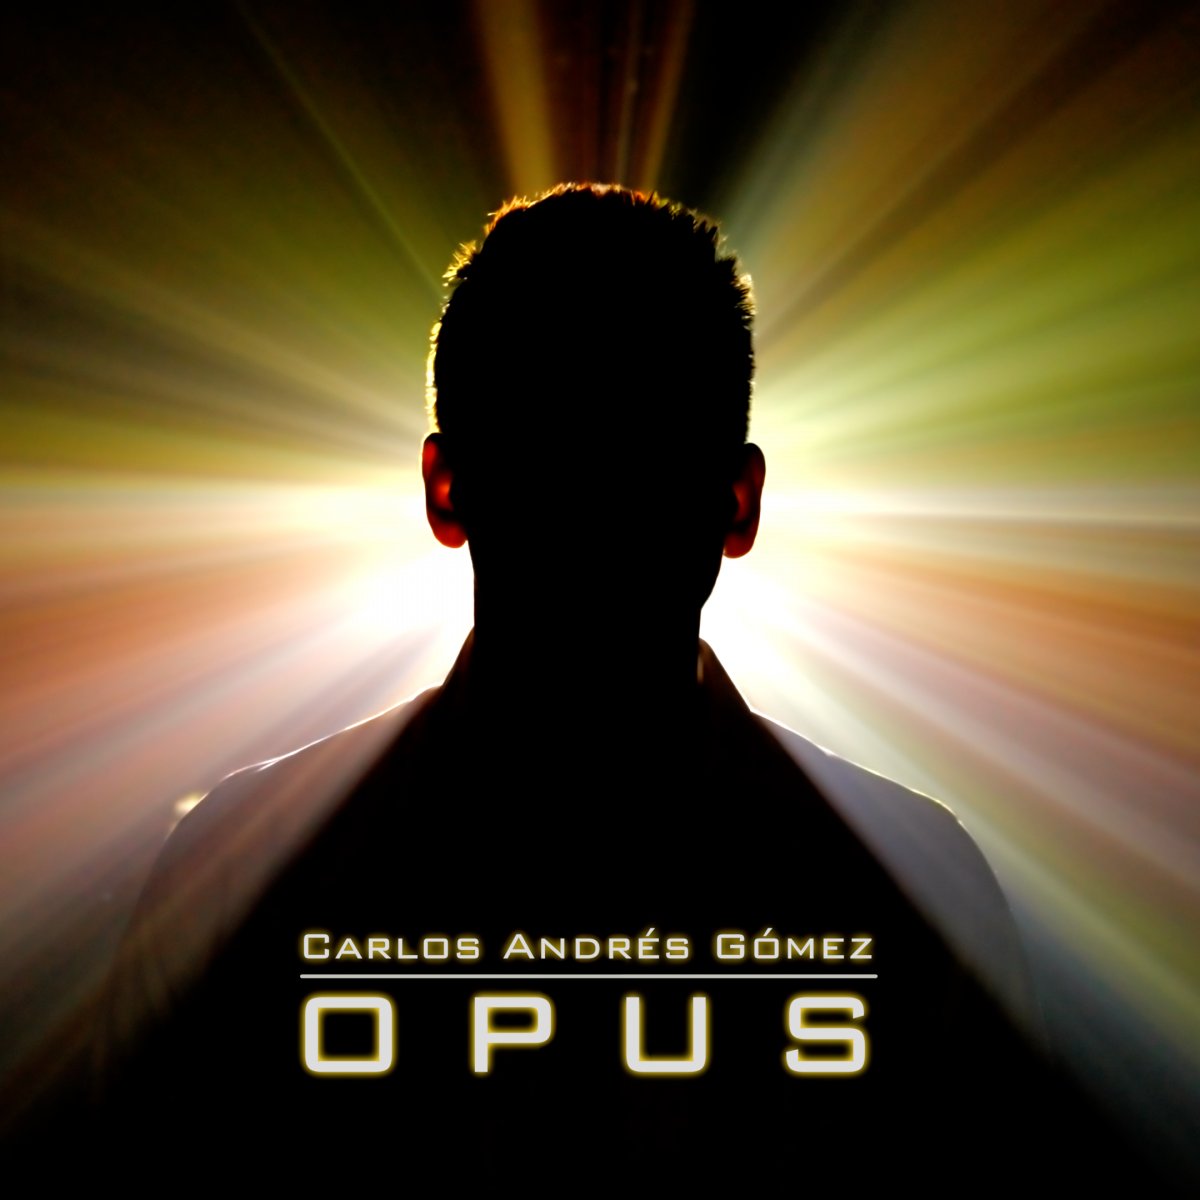 my debut studio album: “Opus”